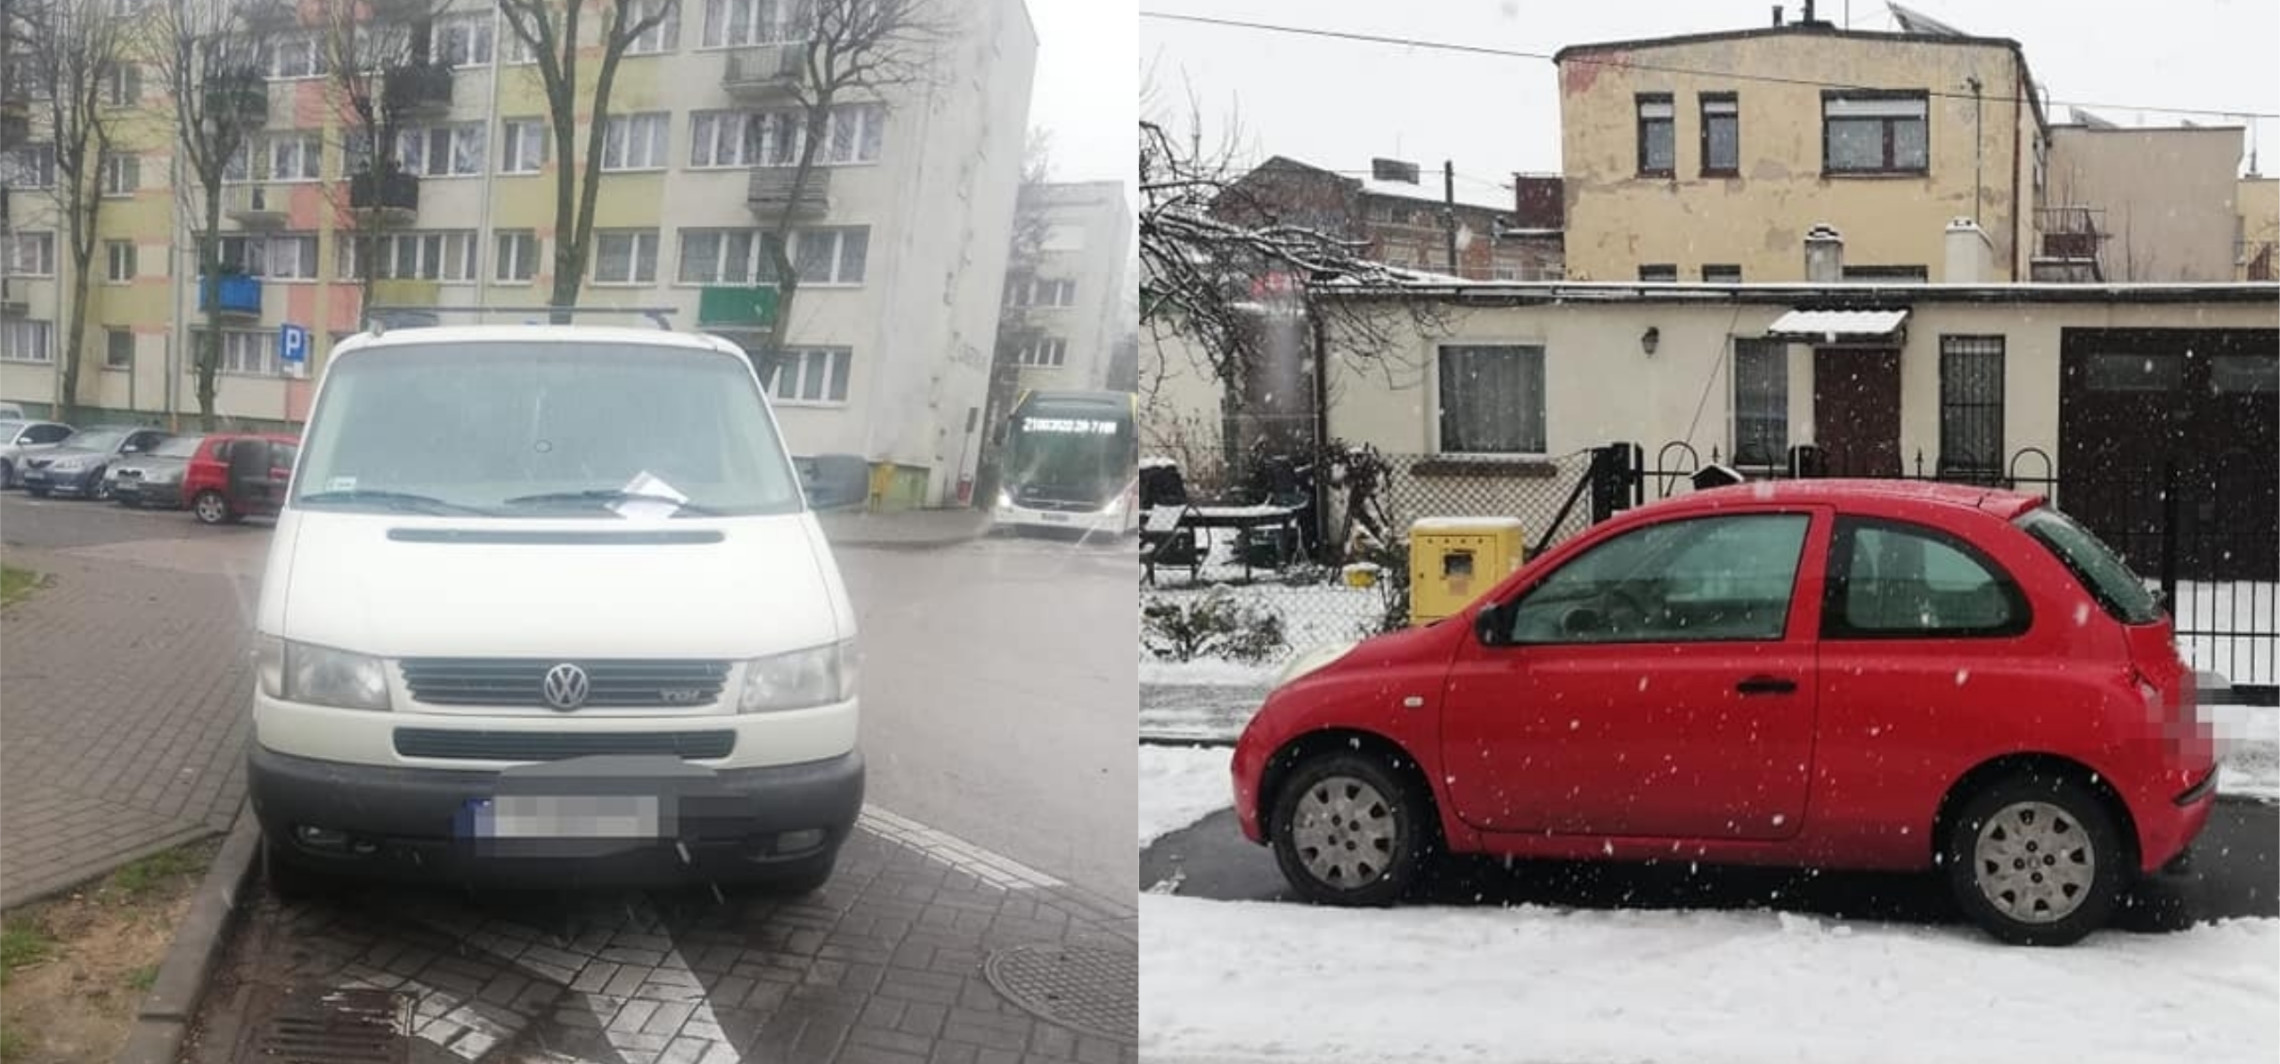 Inowrocław - Mistrzowie parkowania dali popis w Inowrocławiu